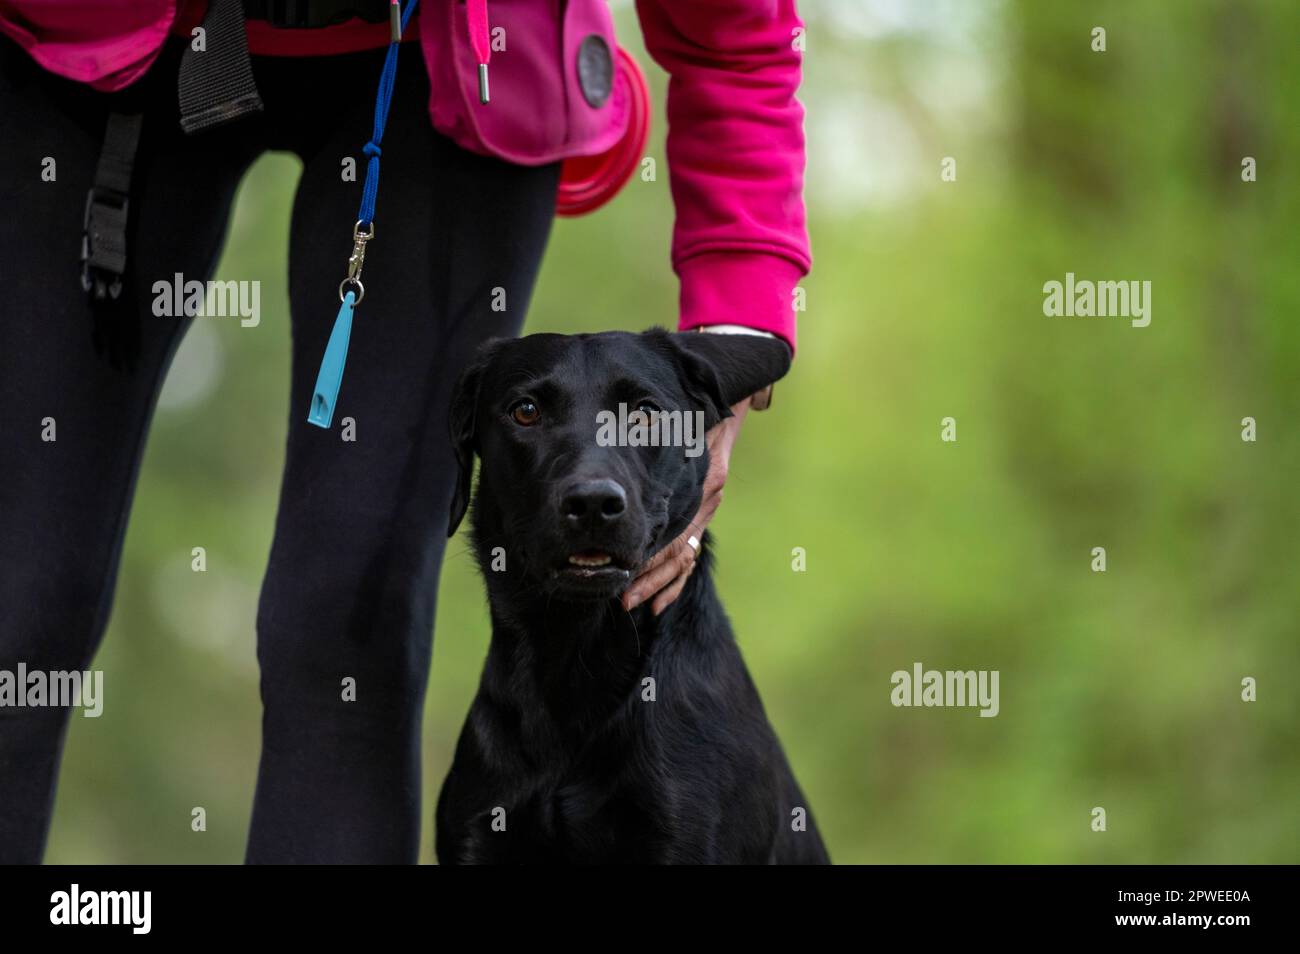 Bel cane labrador retriever nero pureed seduto in posizione di tallone dal suo proprietario guardando verso la macchina fotografica. Foto Stock